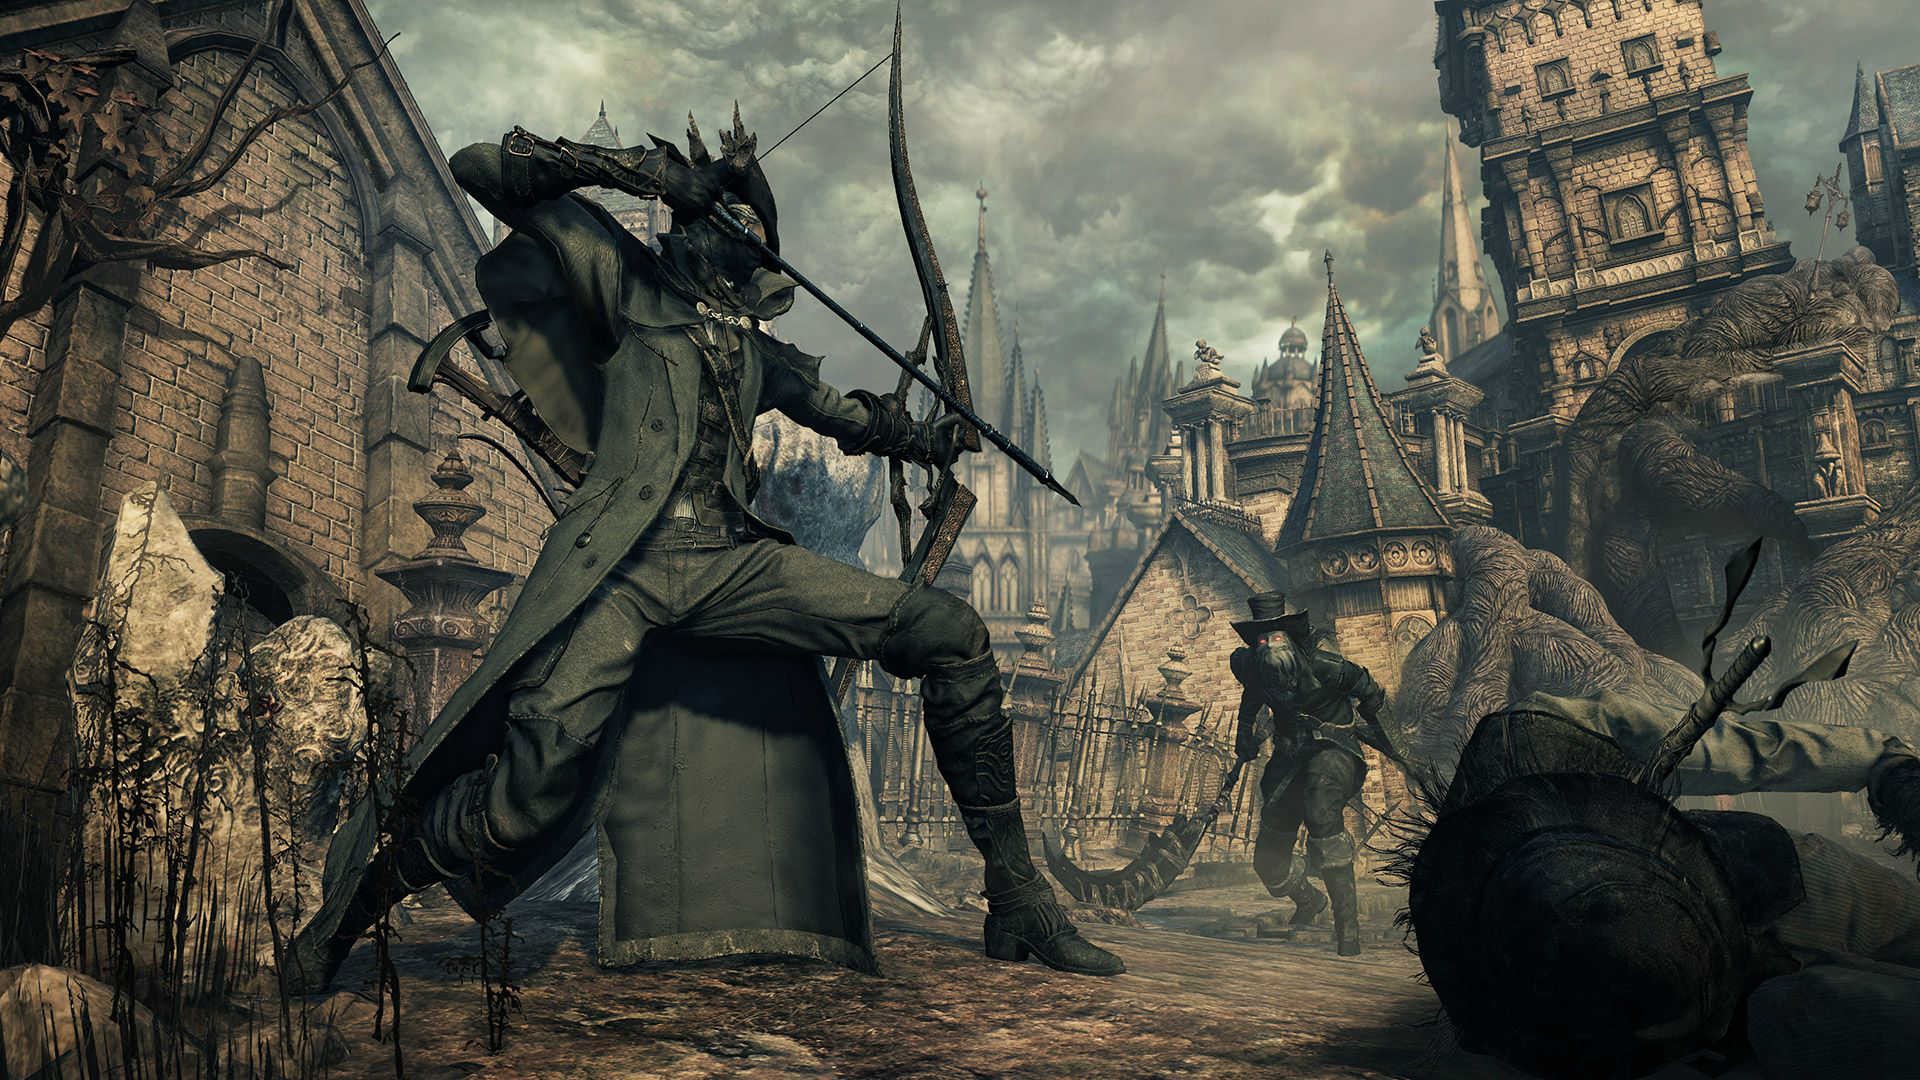 TGS 2015: "Bloodborne" giới thiệu gói nội dung mới - The Old Hunters